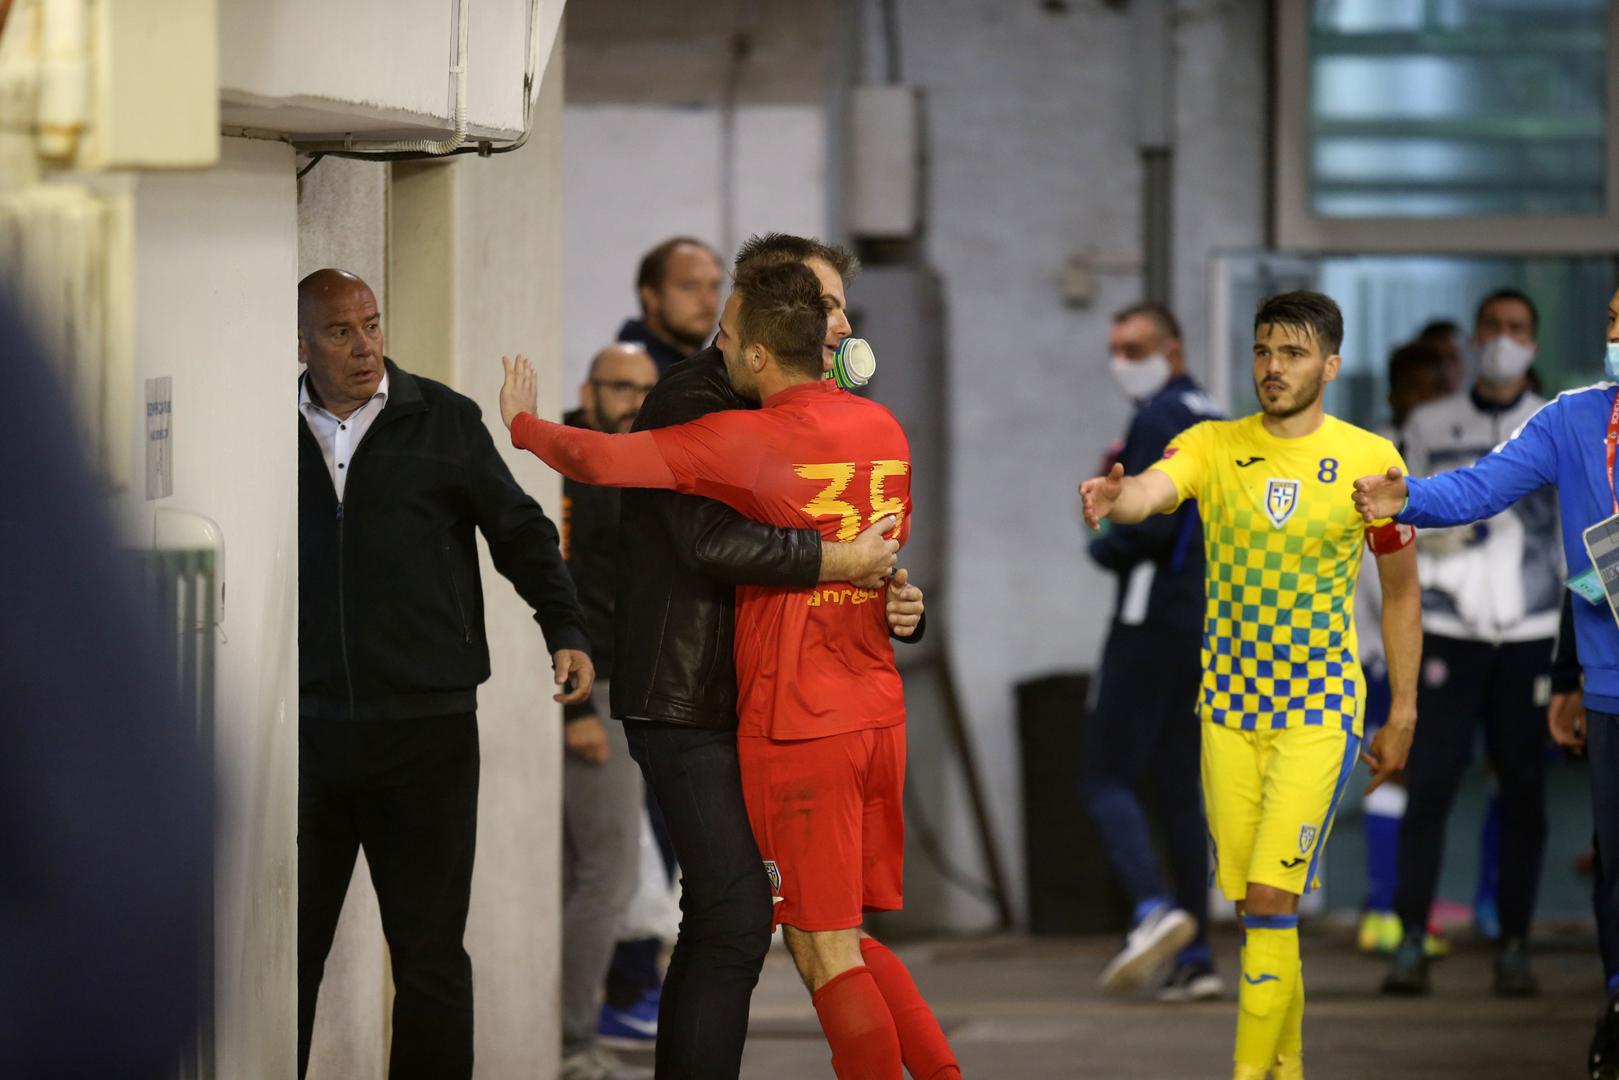 Vratar Intera Mladen Matković nakon utakmice na Poljudu htio je pogledati snimku. No, udaljili su ga pa je došlo na manjeg naguravanja.